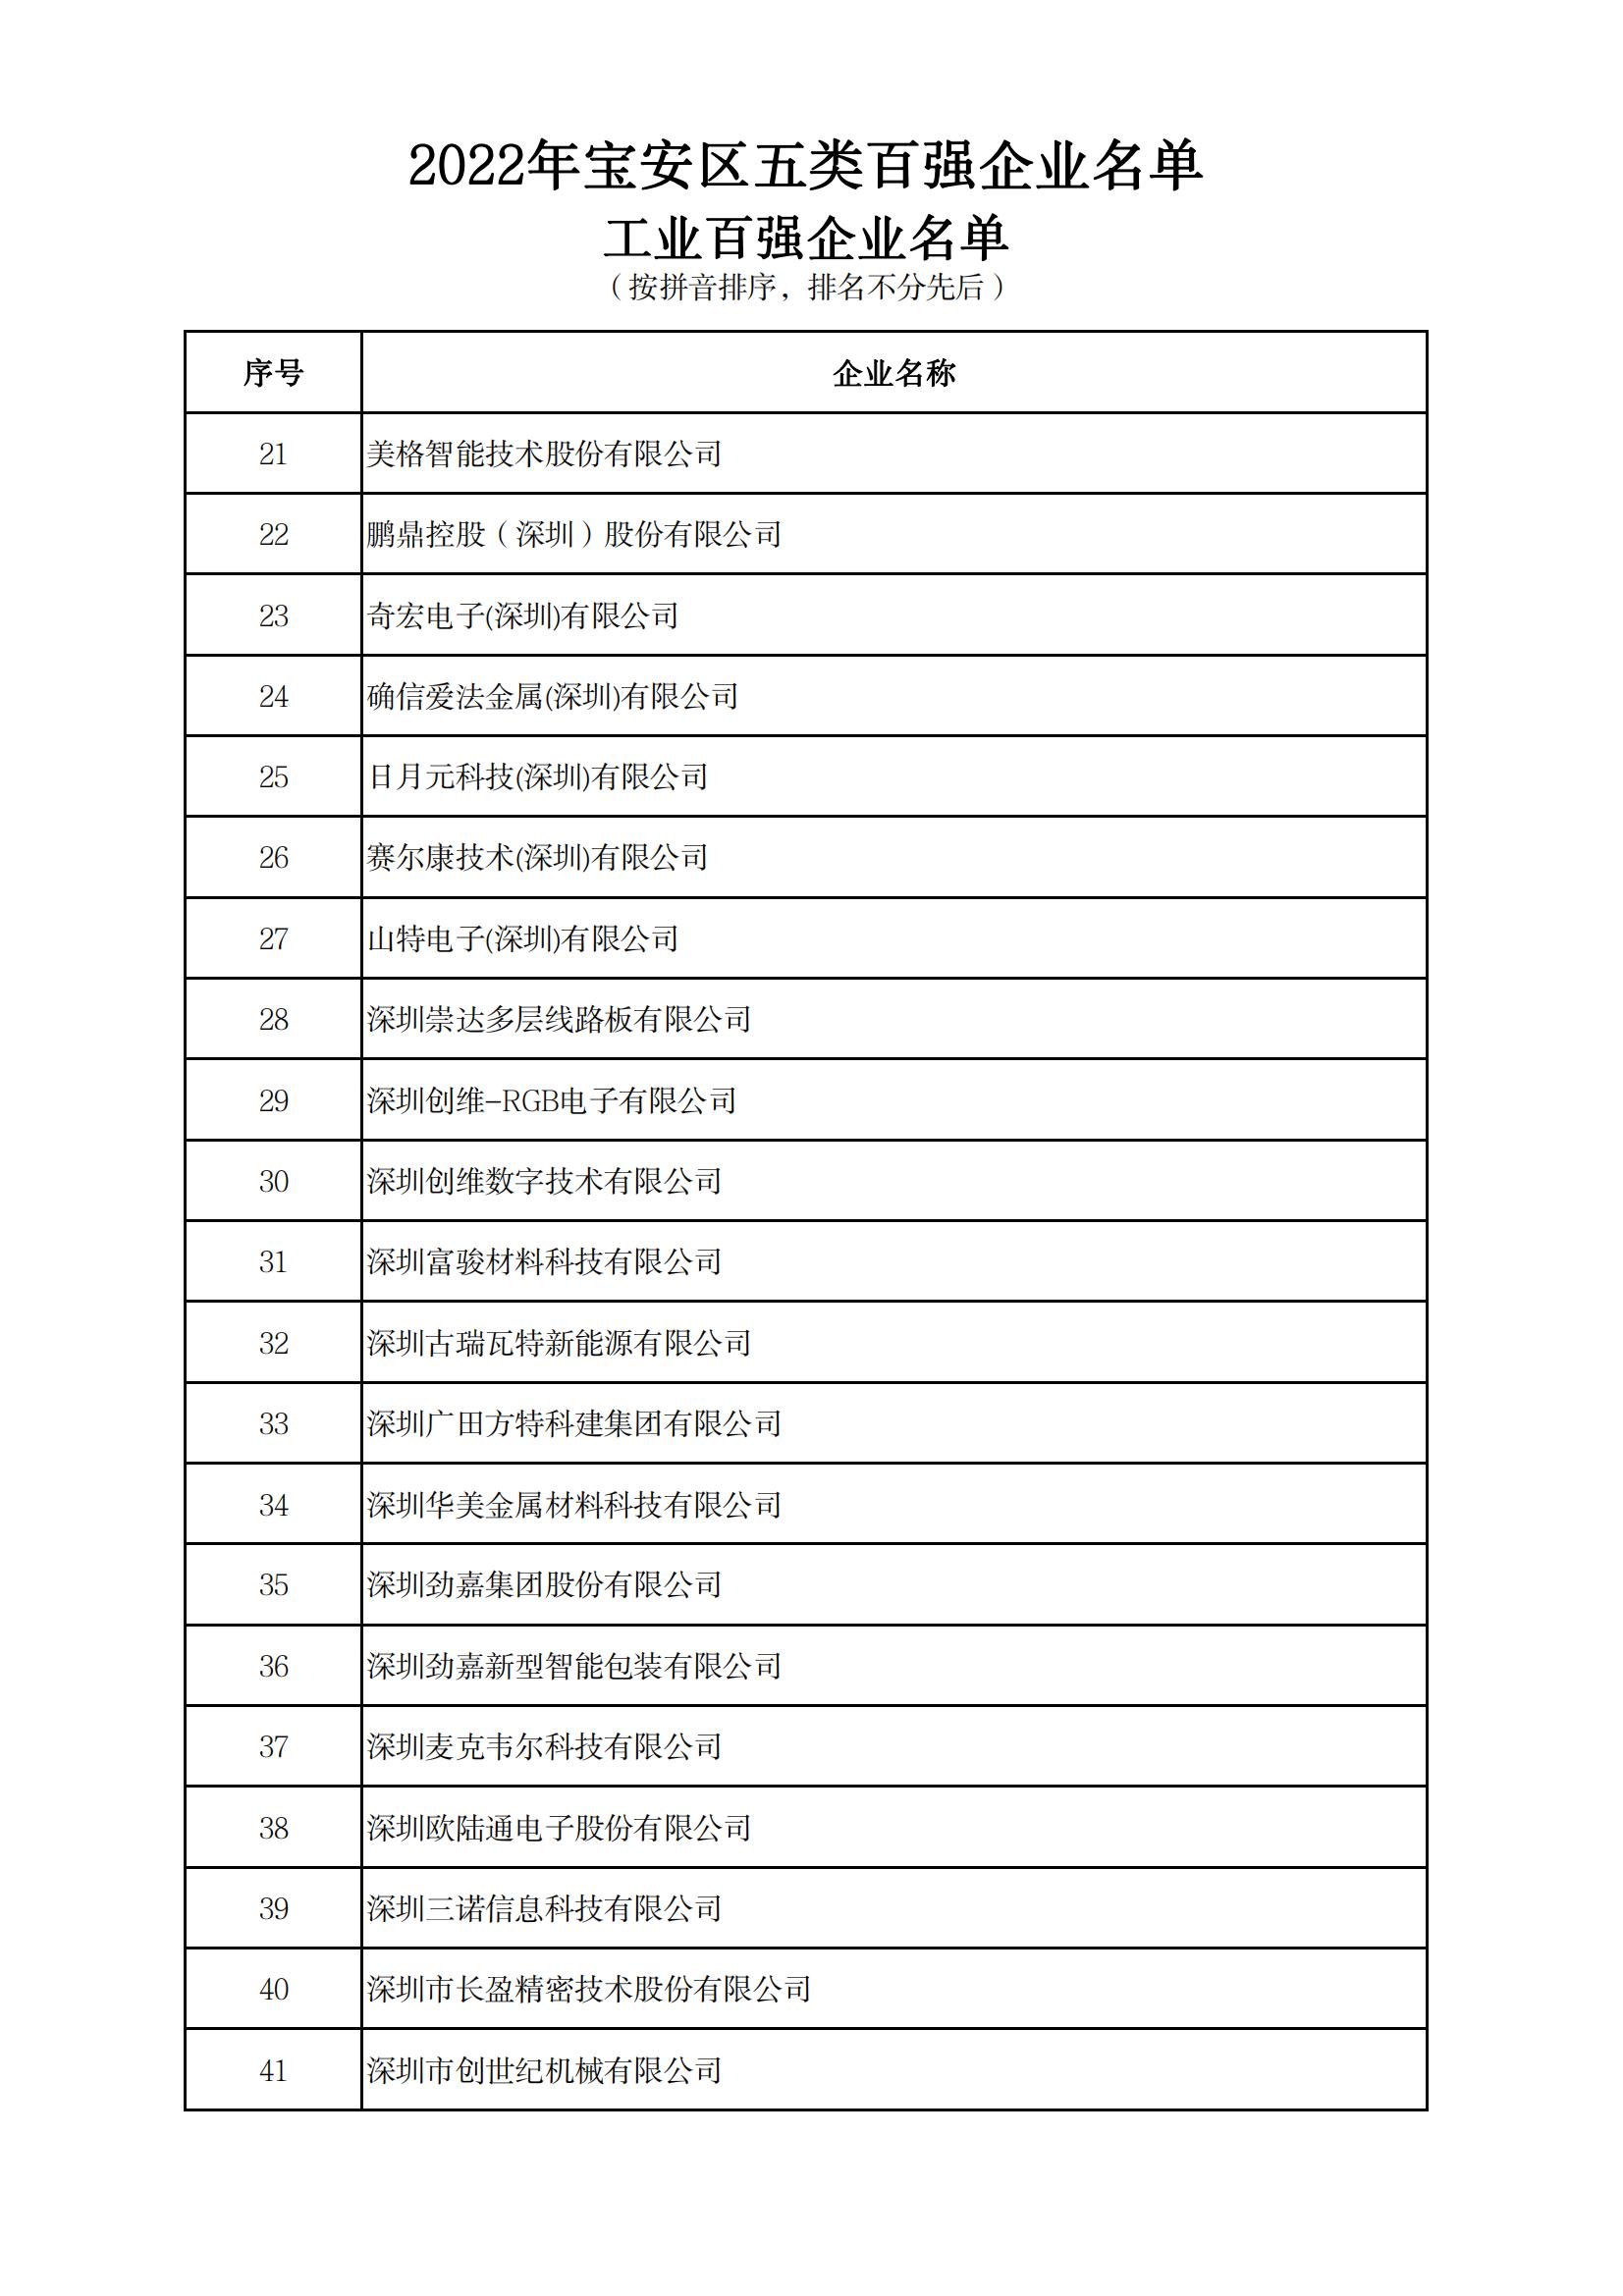 附件：2022年宝安区五类百强企业名单_01.jpg